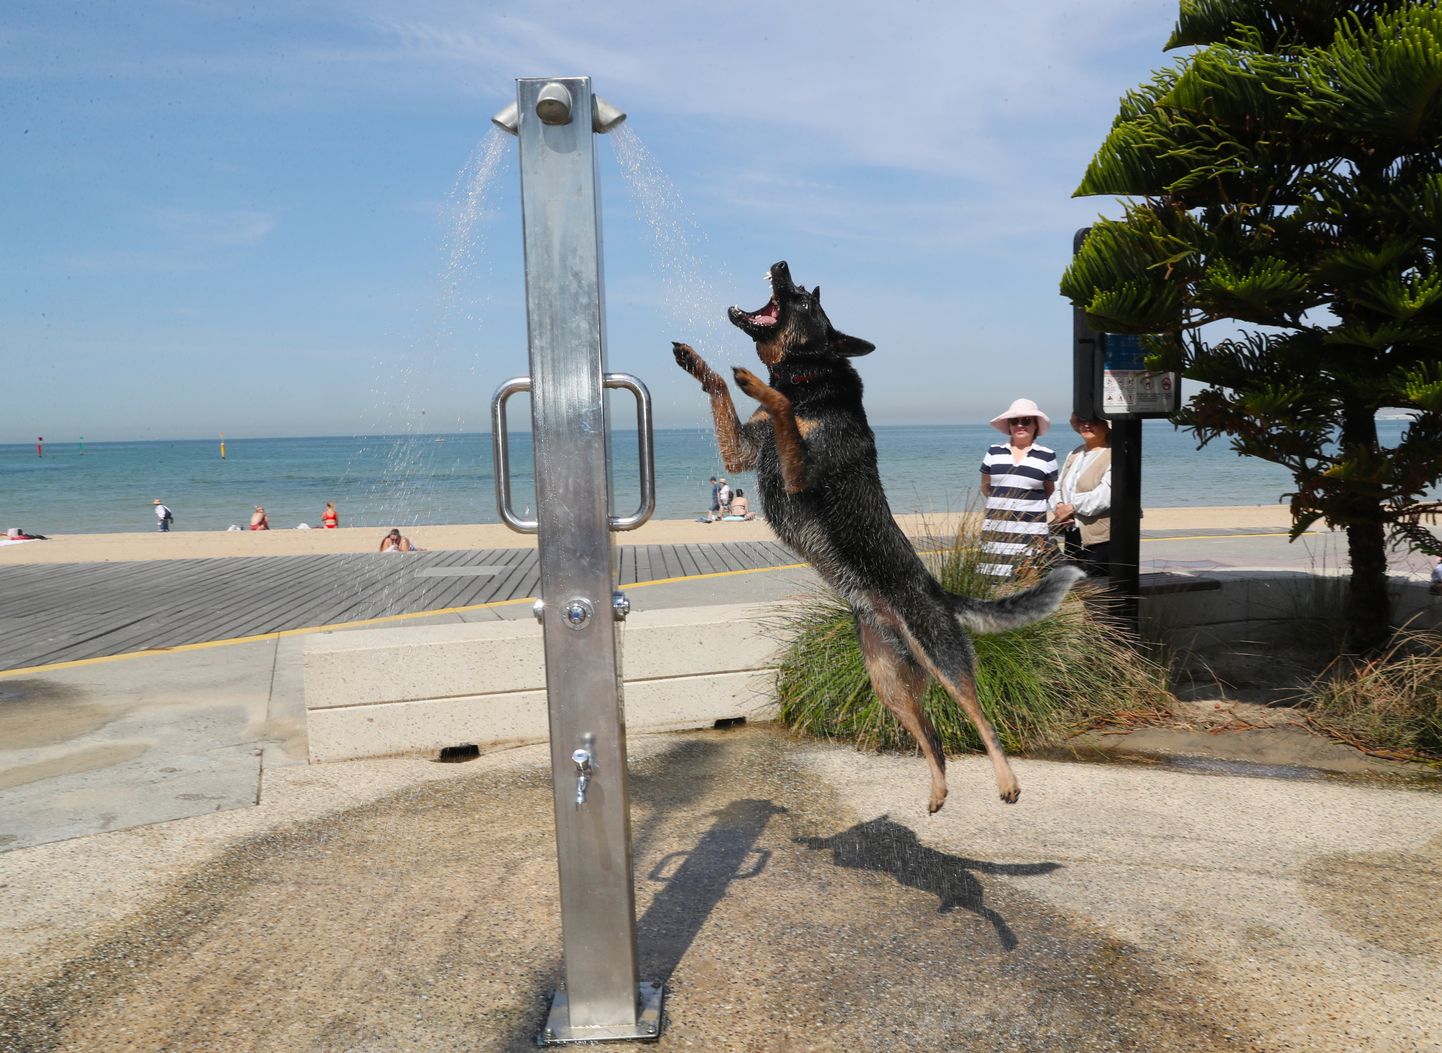 Austraalias on keskmine temperatuur kerkinud 40,9 kraadini. Pildil Victoria osariigi St Kilda rand, kus koer jahutab end dušši võttes